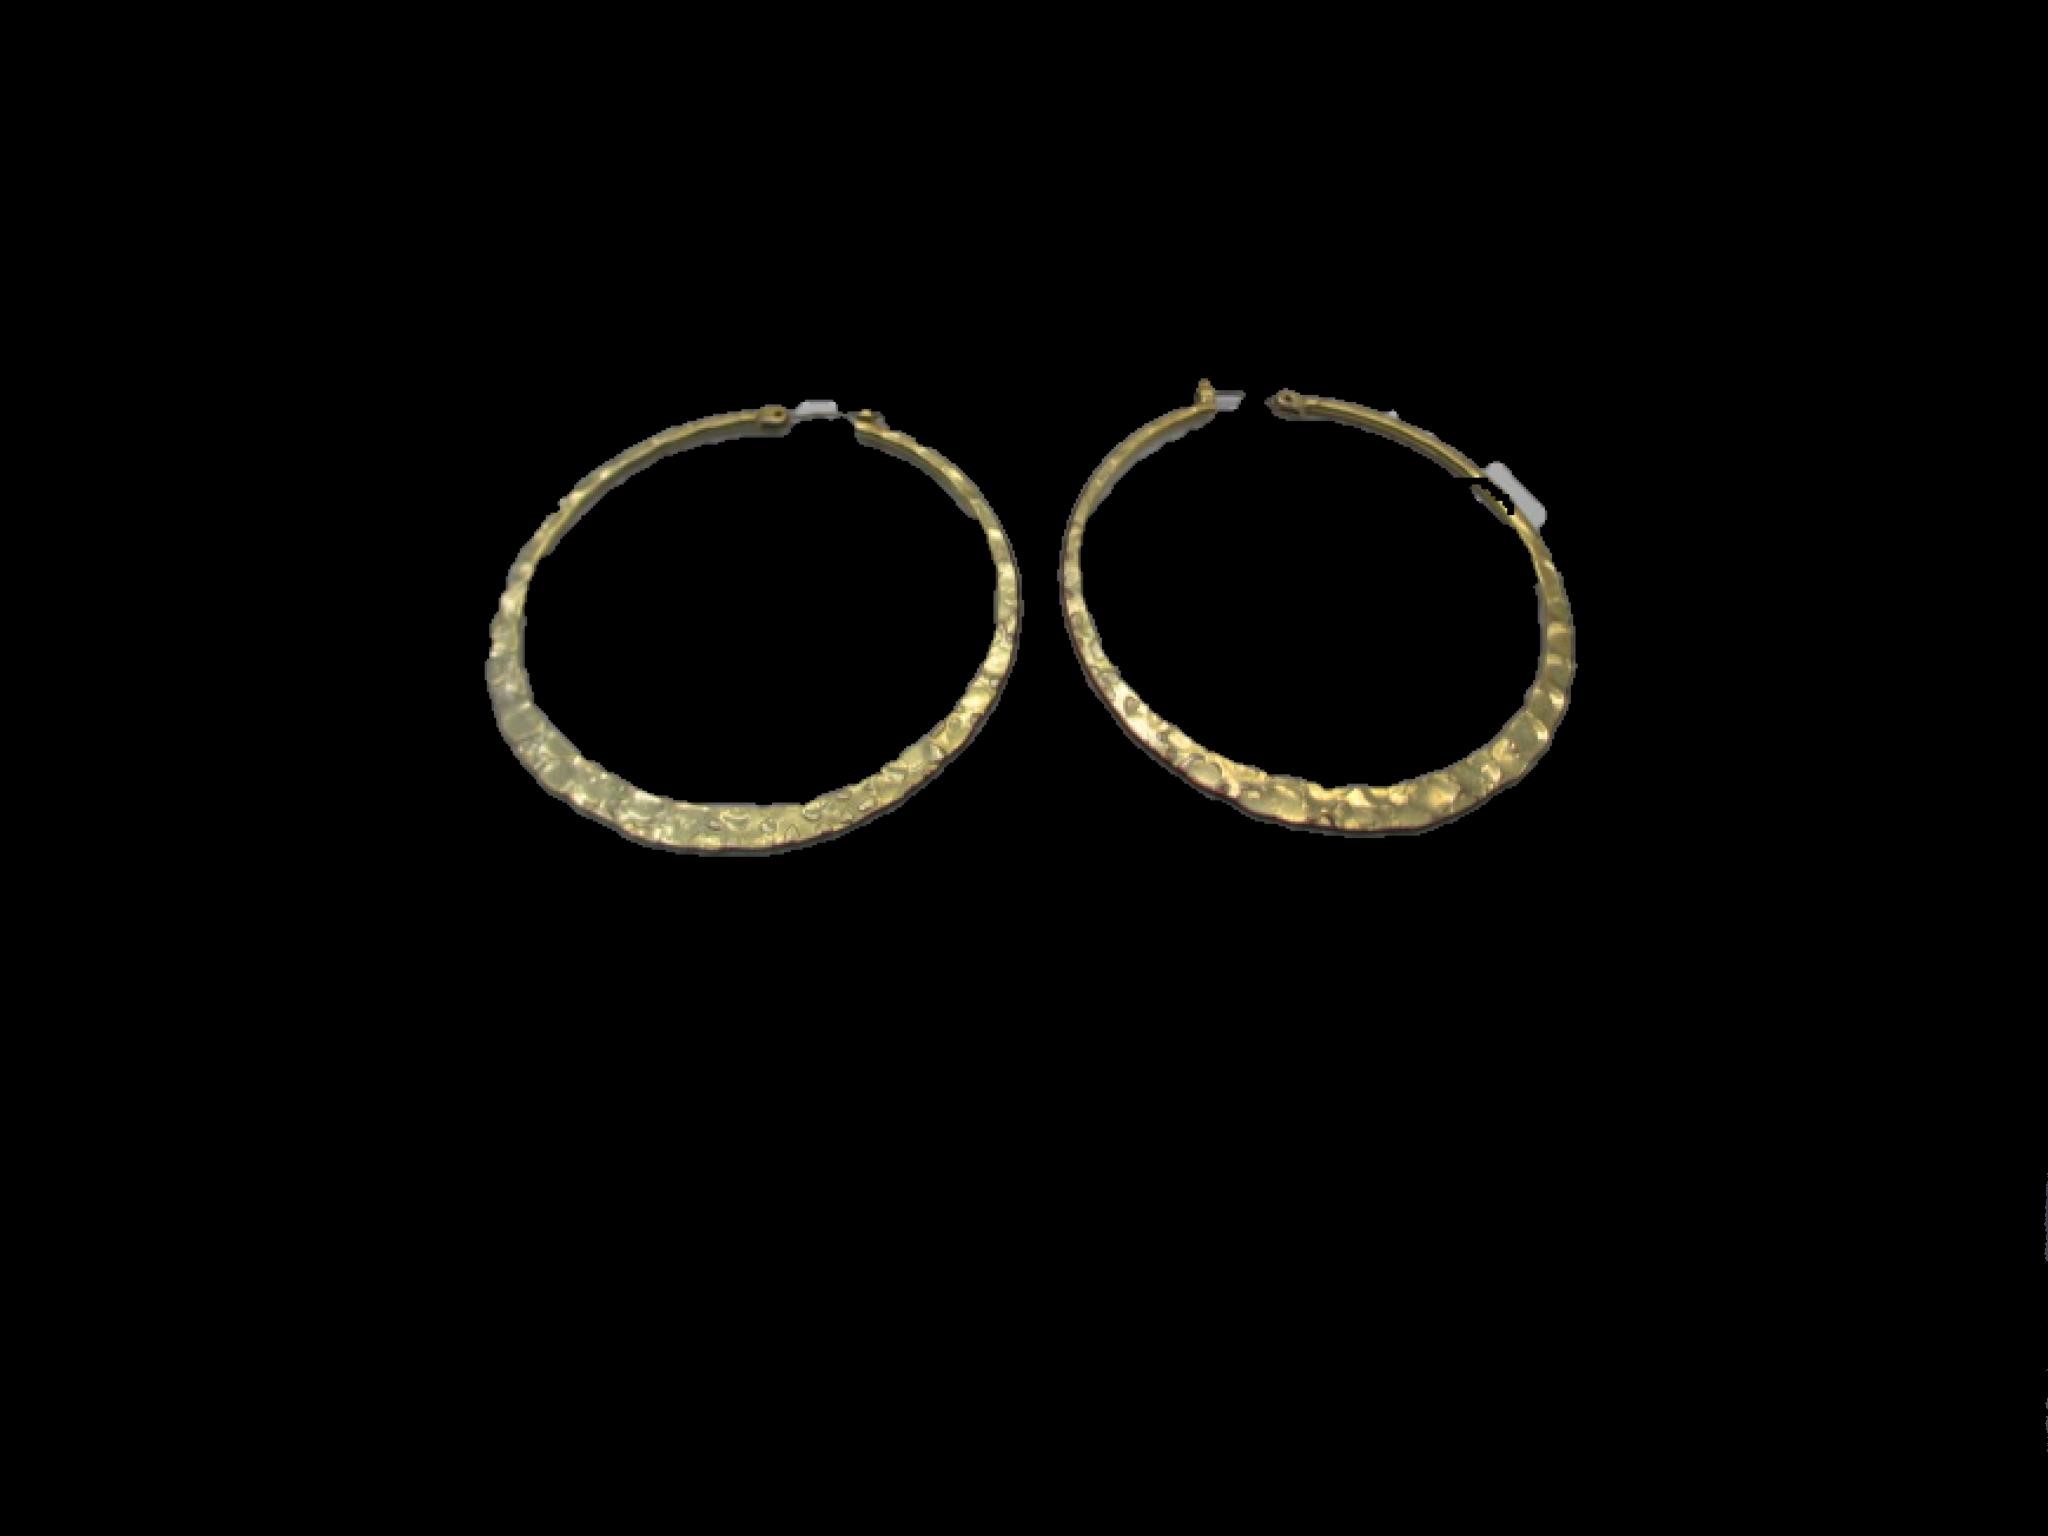 Pair of 14k Hammered Gold Hoop Earrings